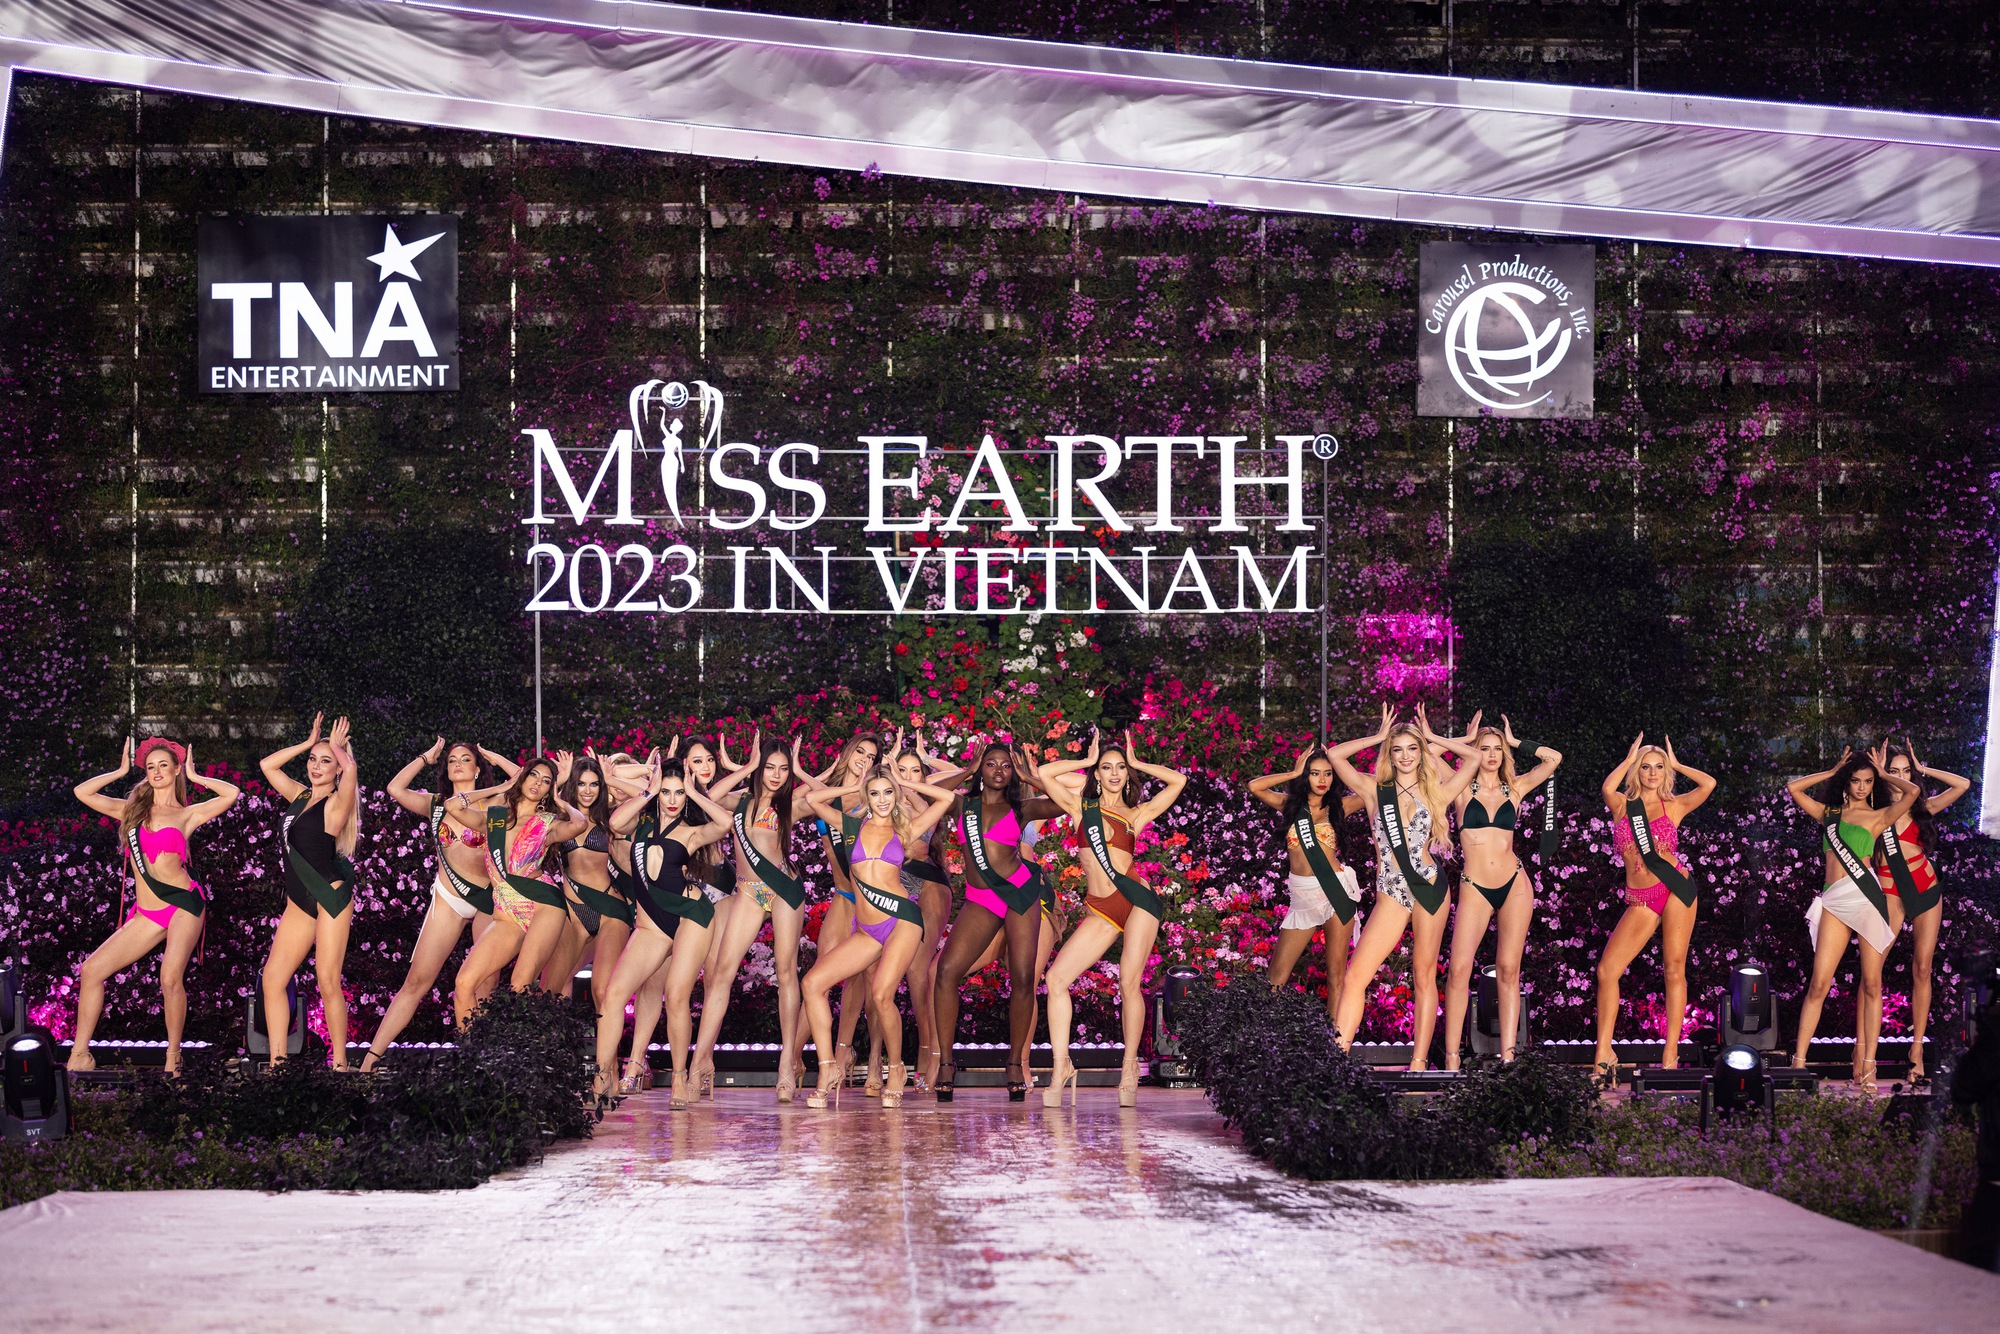 Dàn người đẹp Miss Earth 2023 khoe dáng nóng bỏng với bikini dưới trời lạnh 15 độ - Ảnh 34.